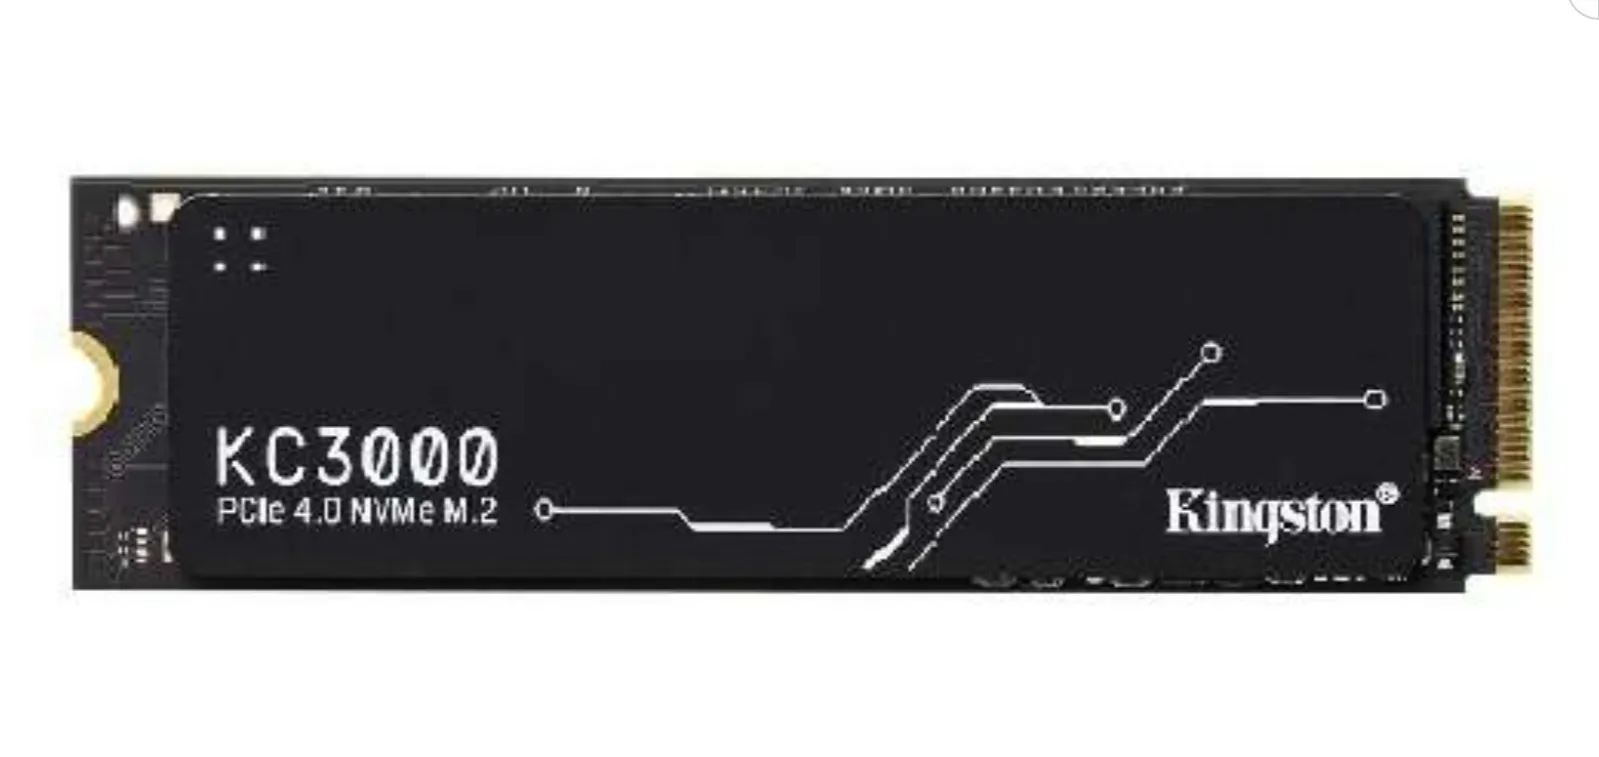 1TB Kingston KC3000 M.2 2280 PCIe 4.0 x4 NVMe SSD